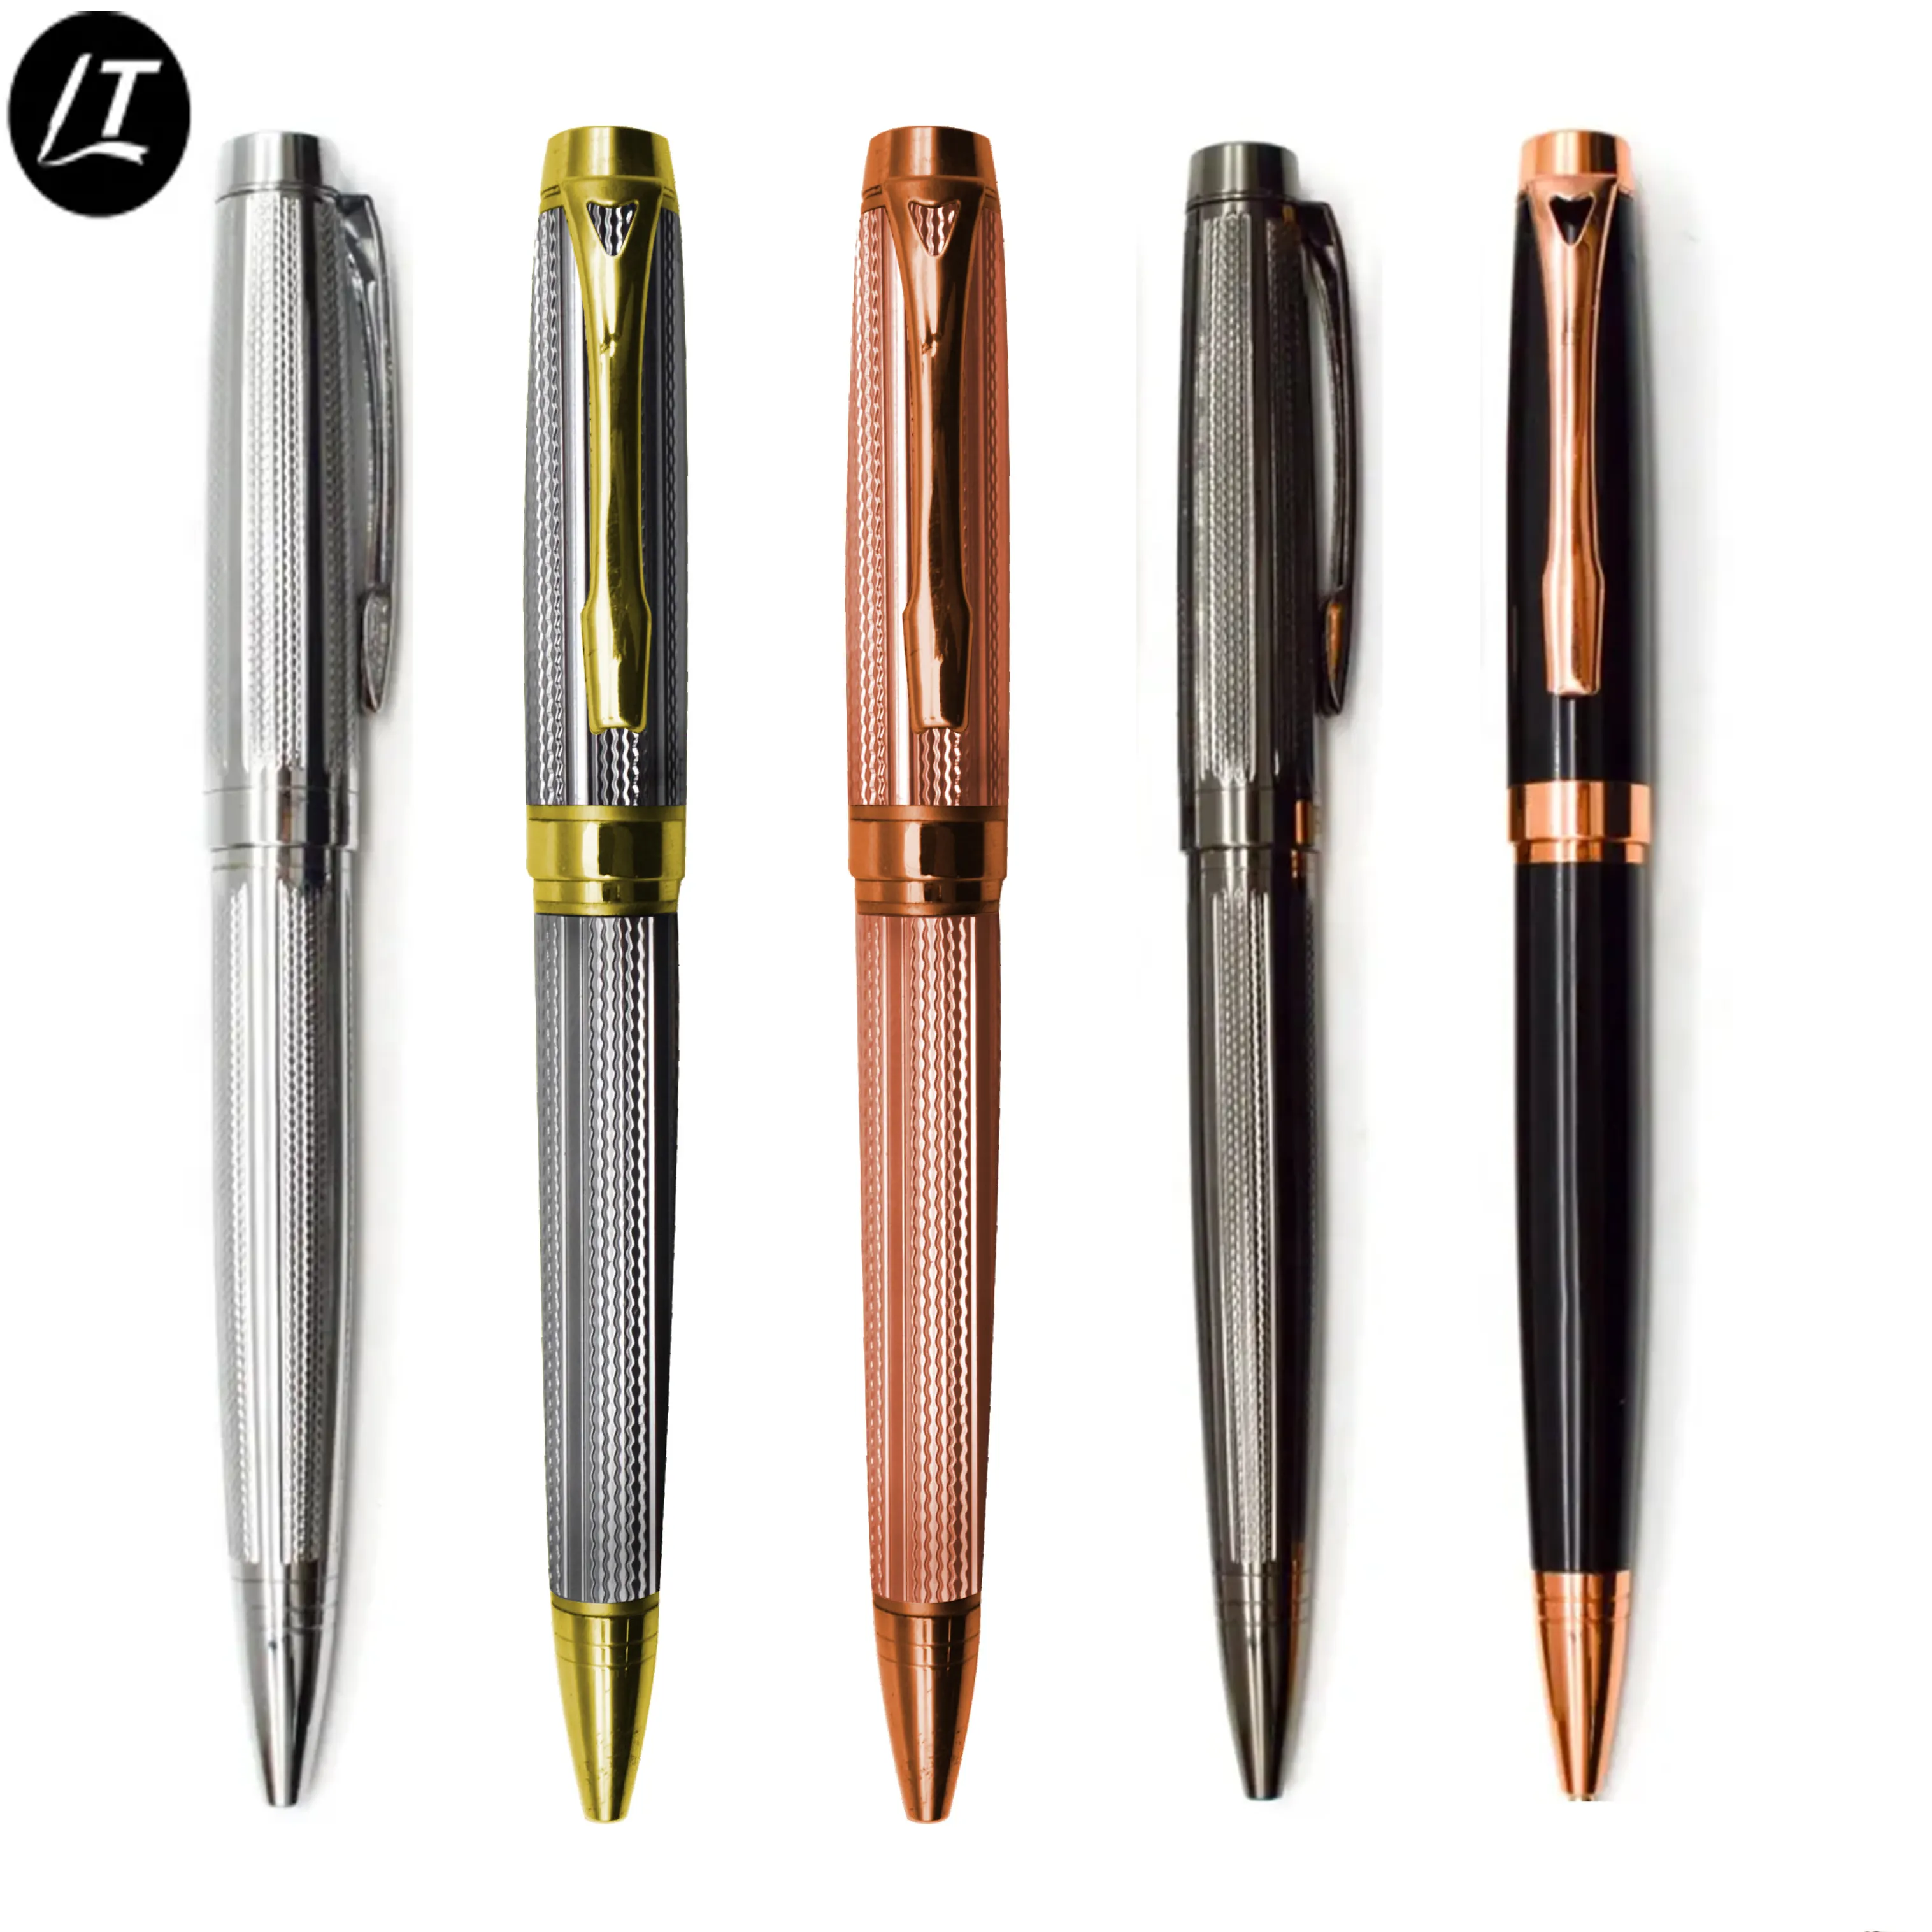 사용자 정의 매우 높은 품질의 펜 세트 비즈니스 선물 상자 럭셔리 새겨진 금속 볼펜